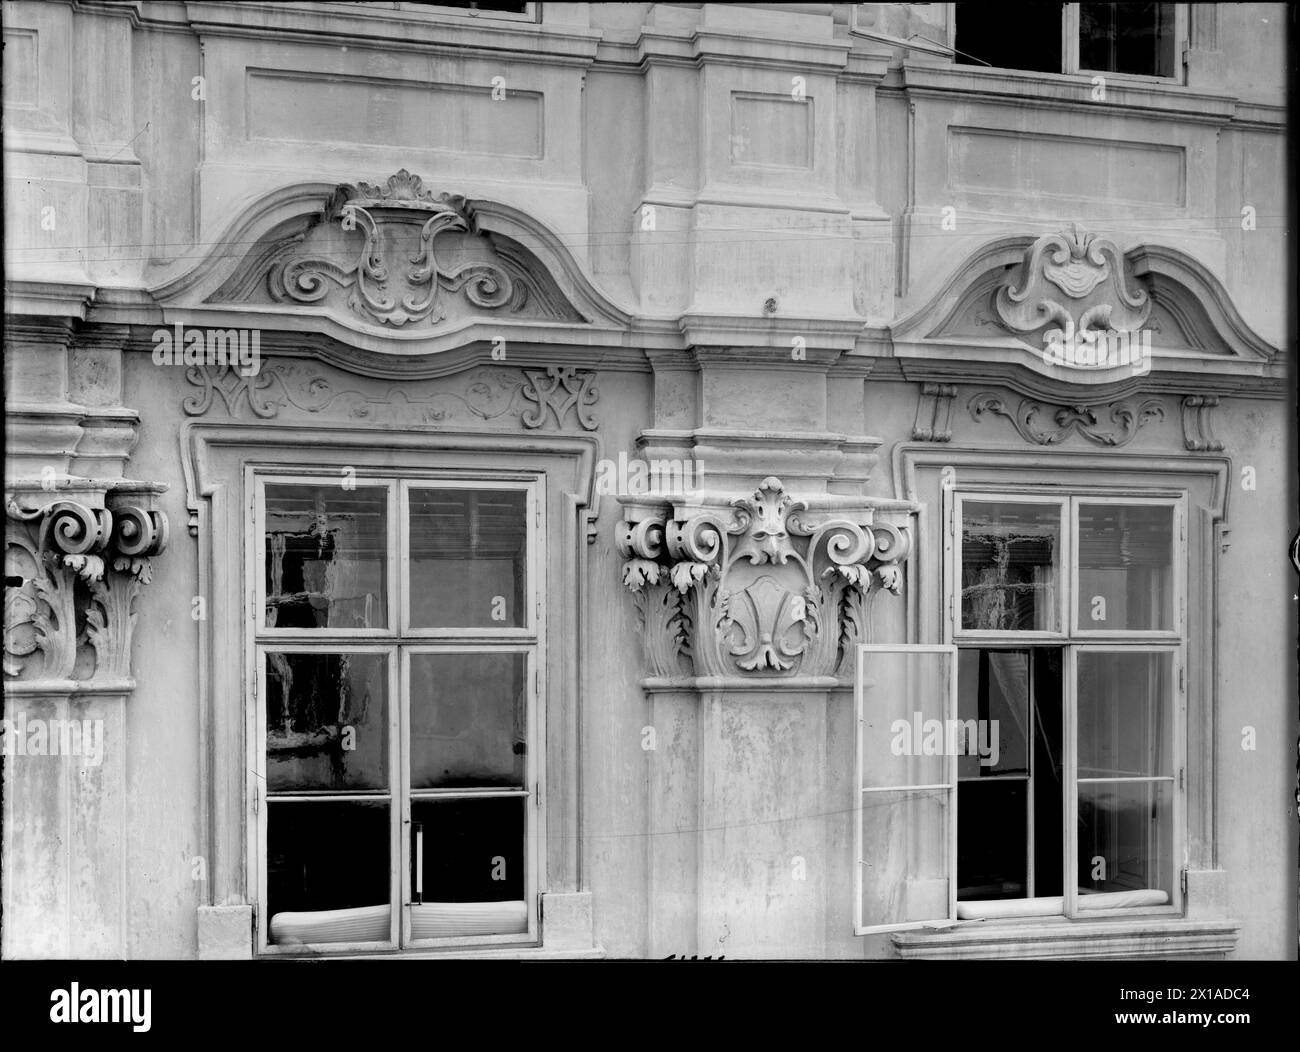 Vienne 1, Habsburgergasse (Habsburger Alley) 5, détail de la façade. Deux fenêtres du premier bâton, 1899 - 18990101 PD0542 - Rechteinfo : droits gérés (RM) Banque D'Images